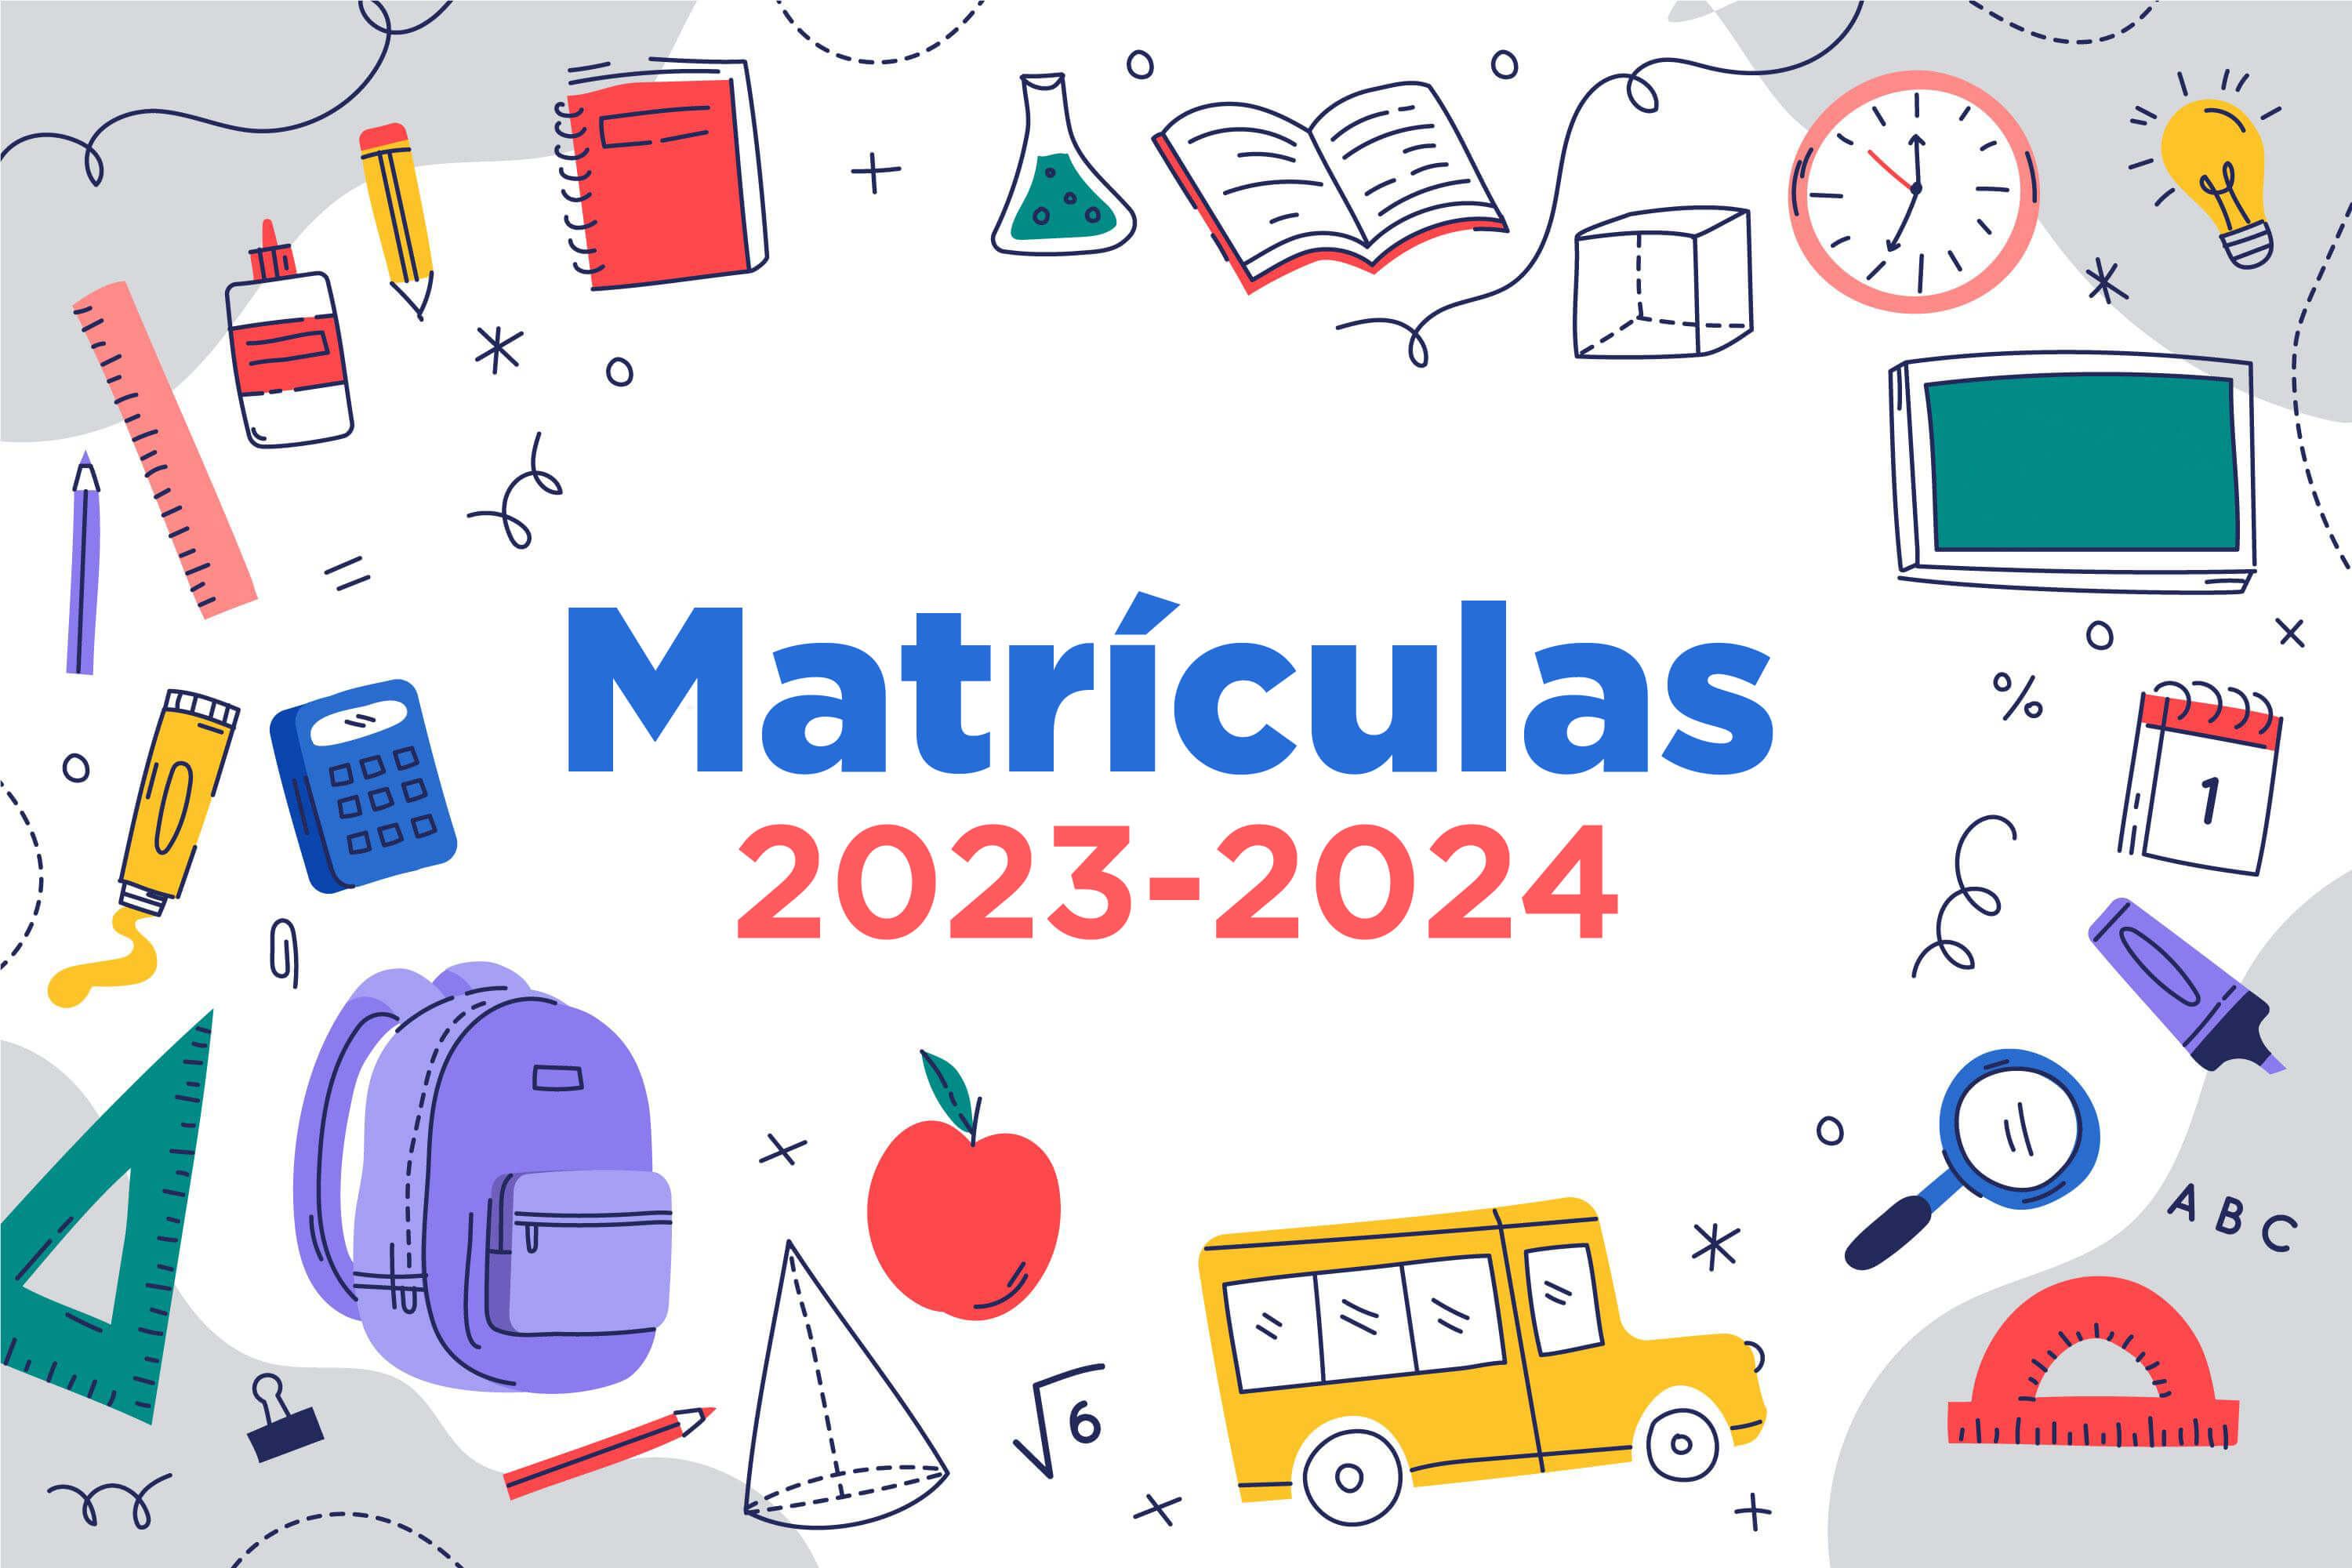 MATRICULAS - 2023-2024